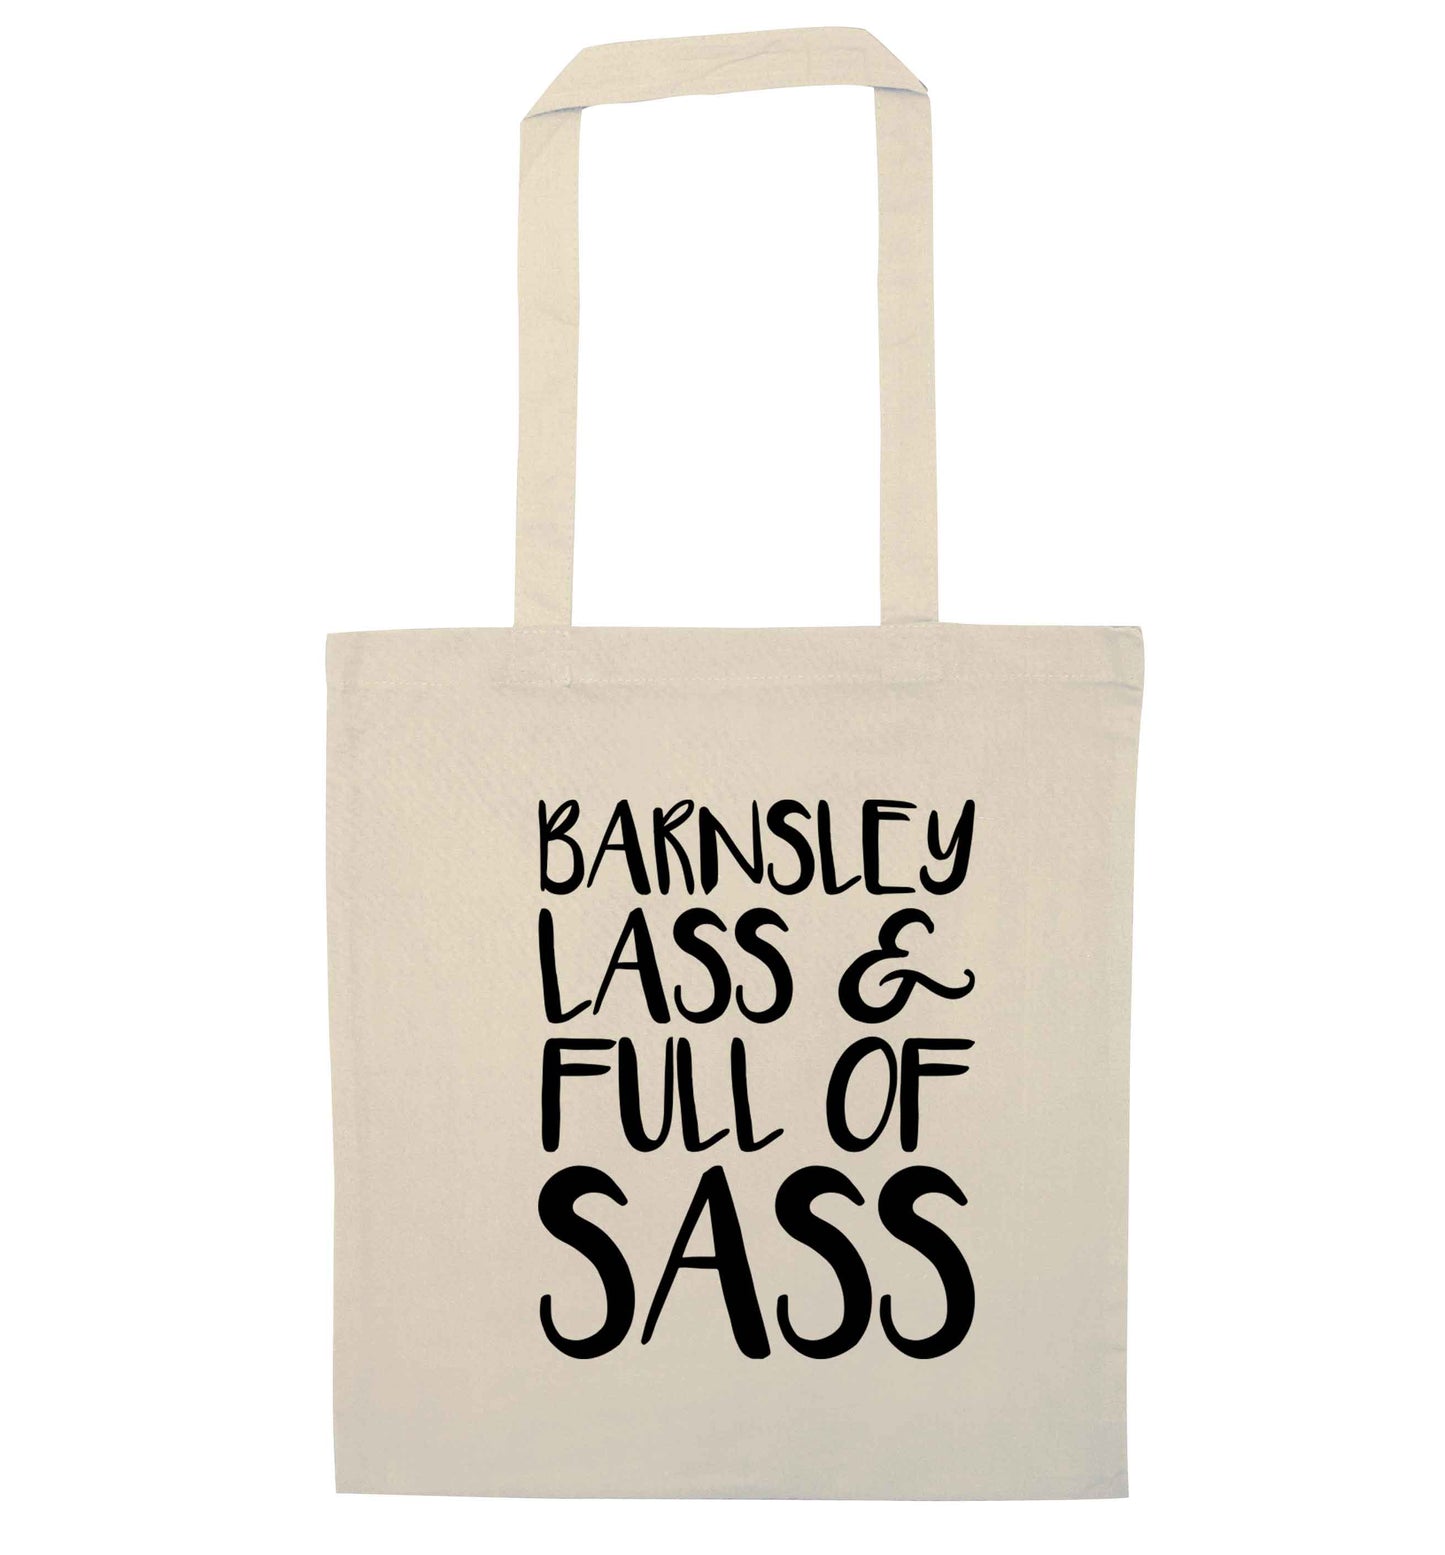 Barnsley lass and full of sass natural tote bag